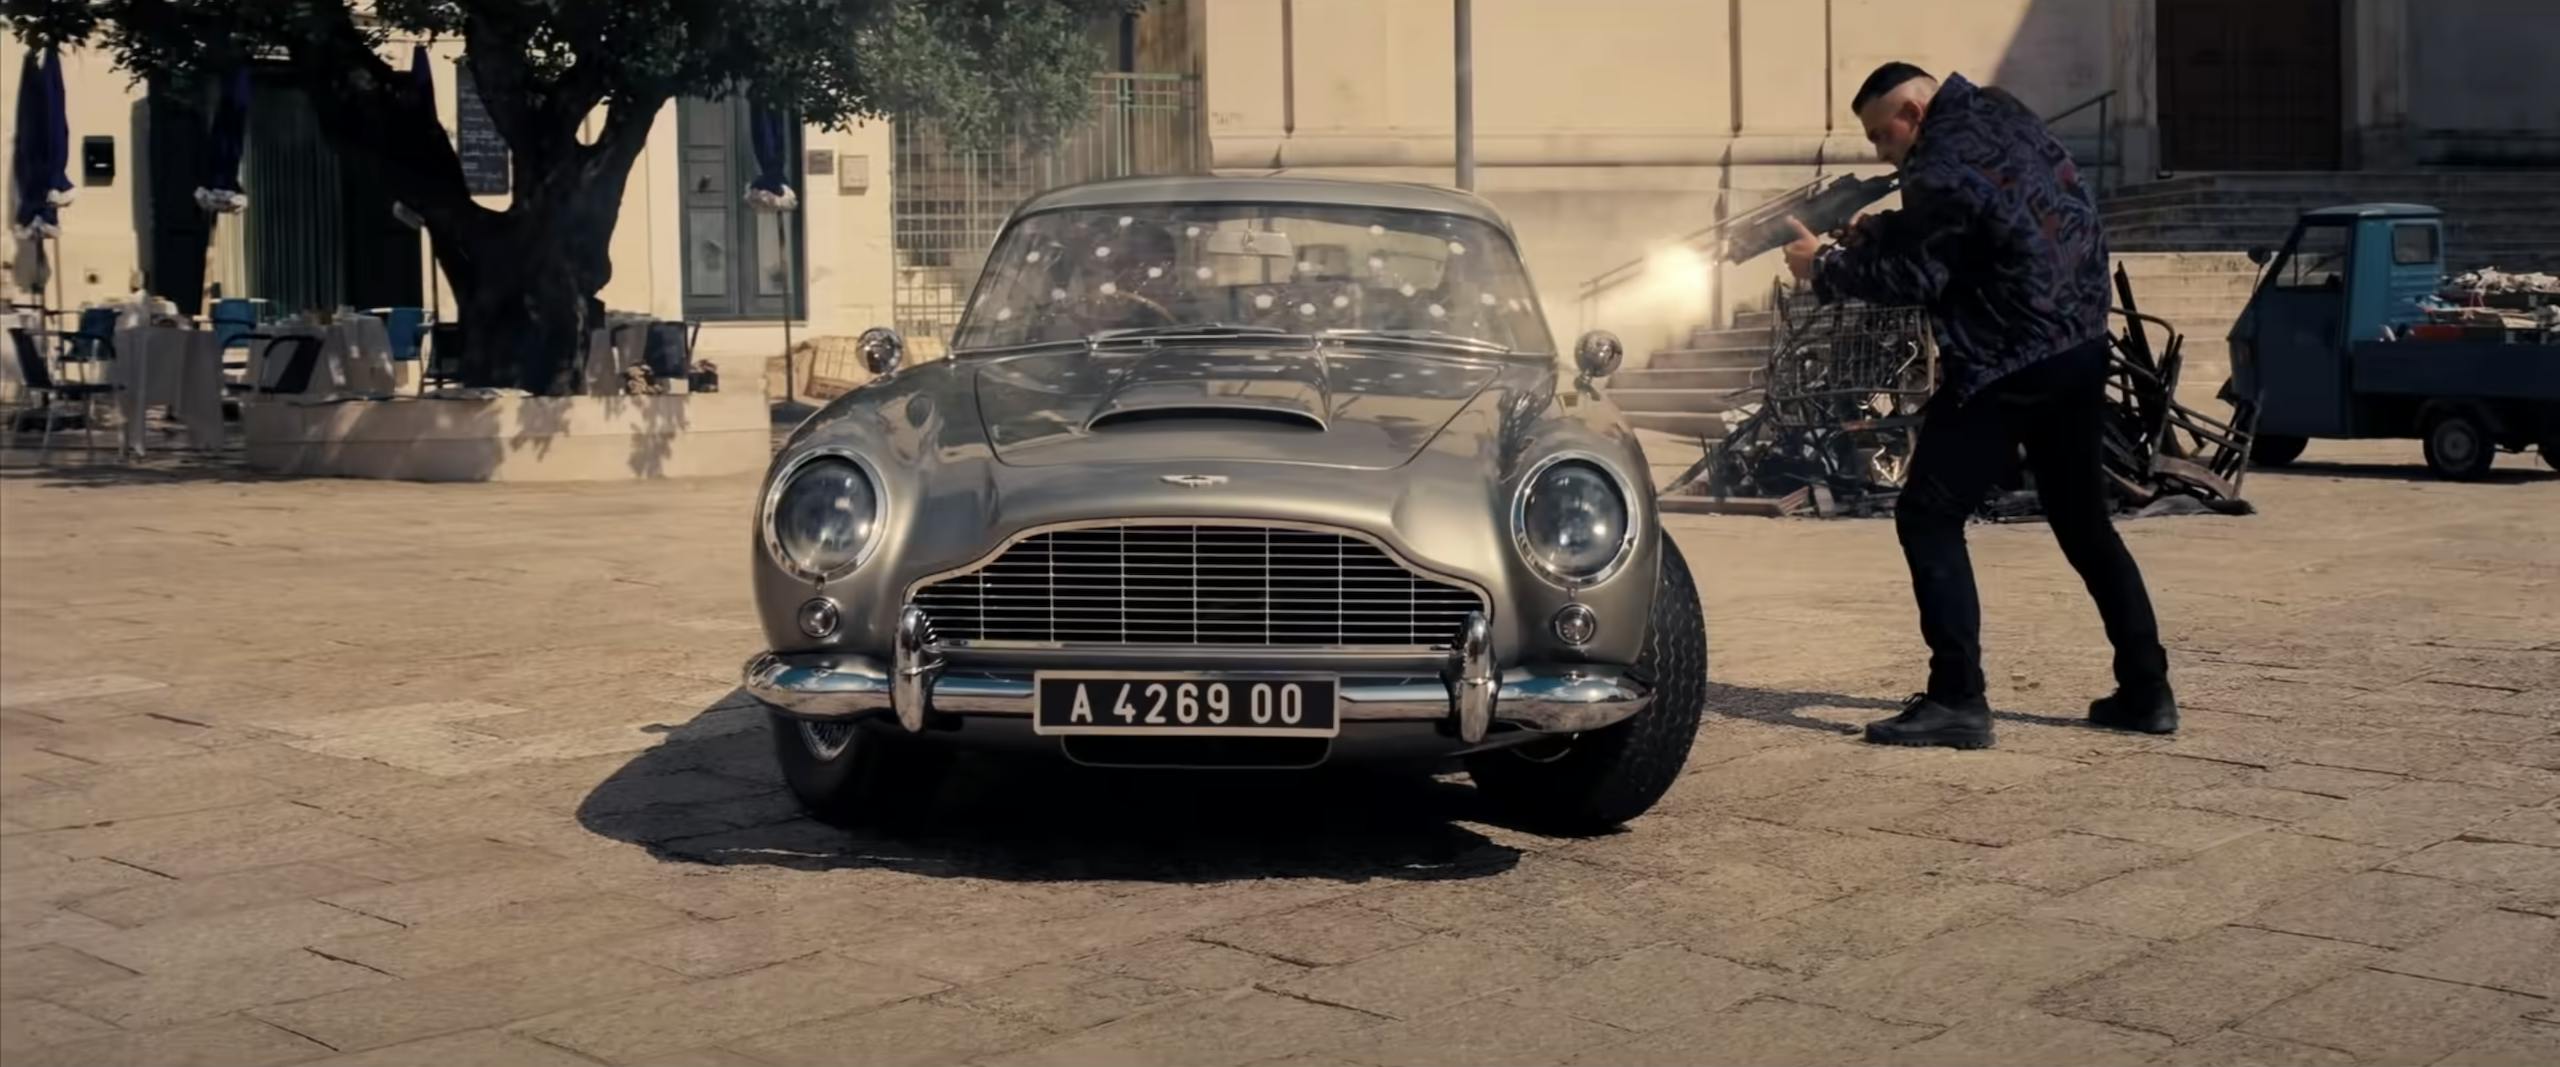 James Bond No Time to Die Aston Martin DB5 bulletholes